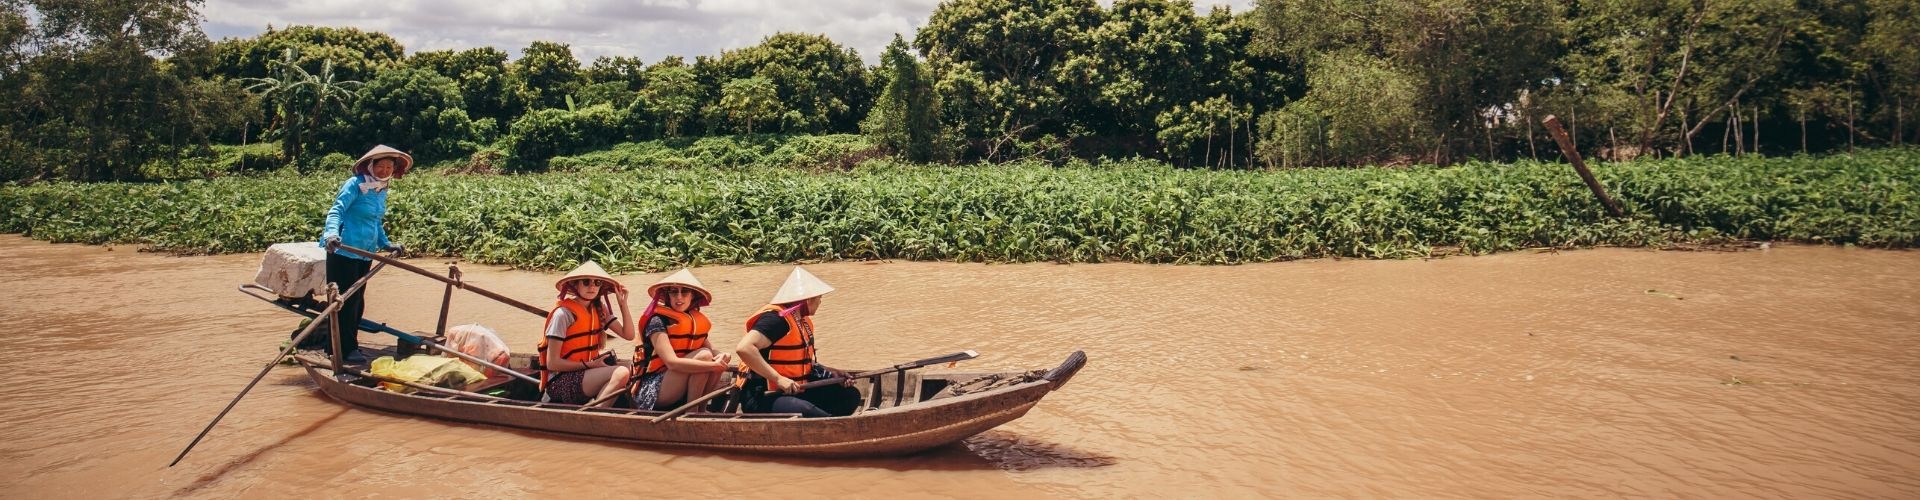 Canoeing activity in Mekong Delta, Vietnam